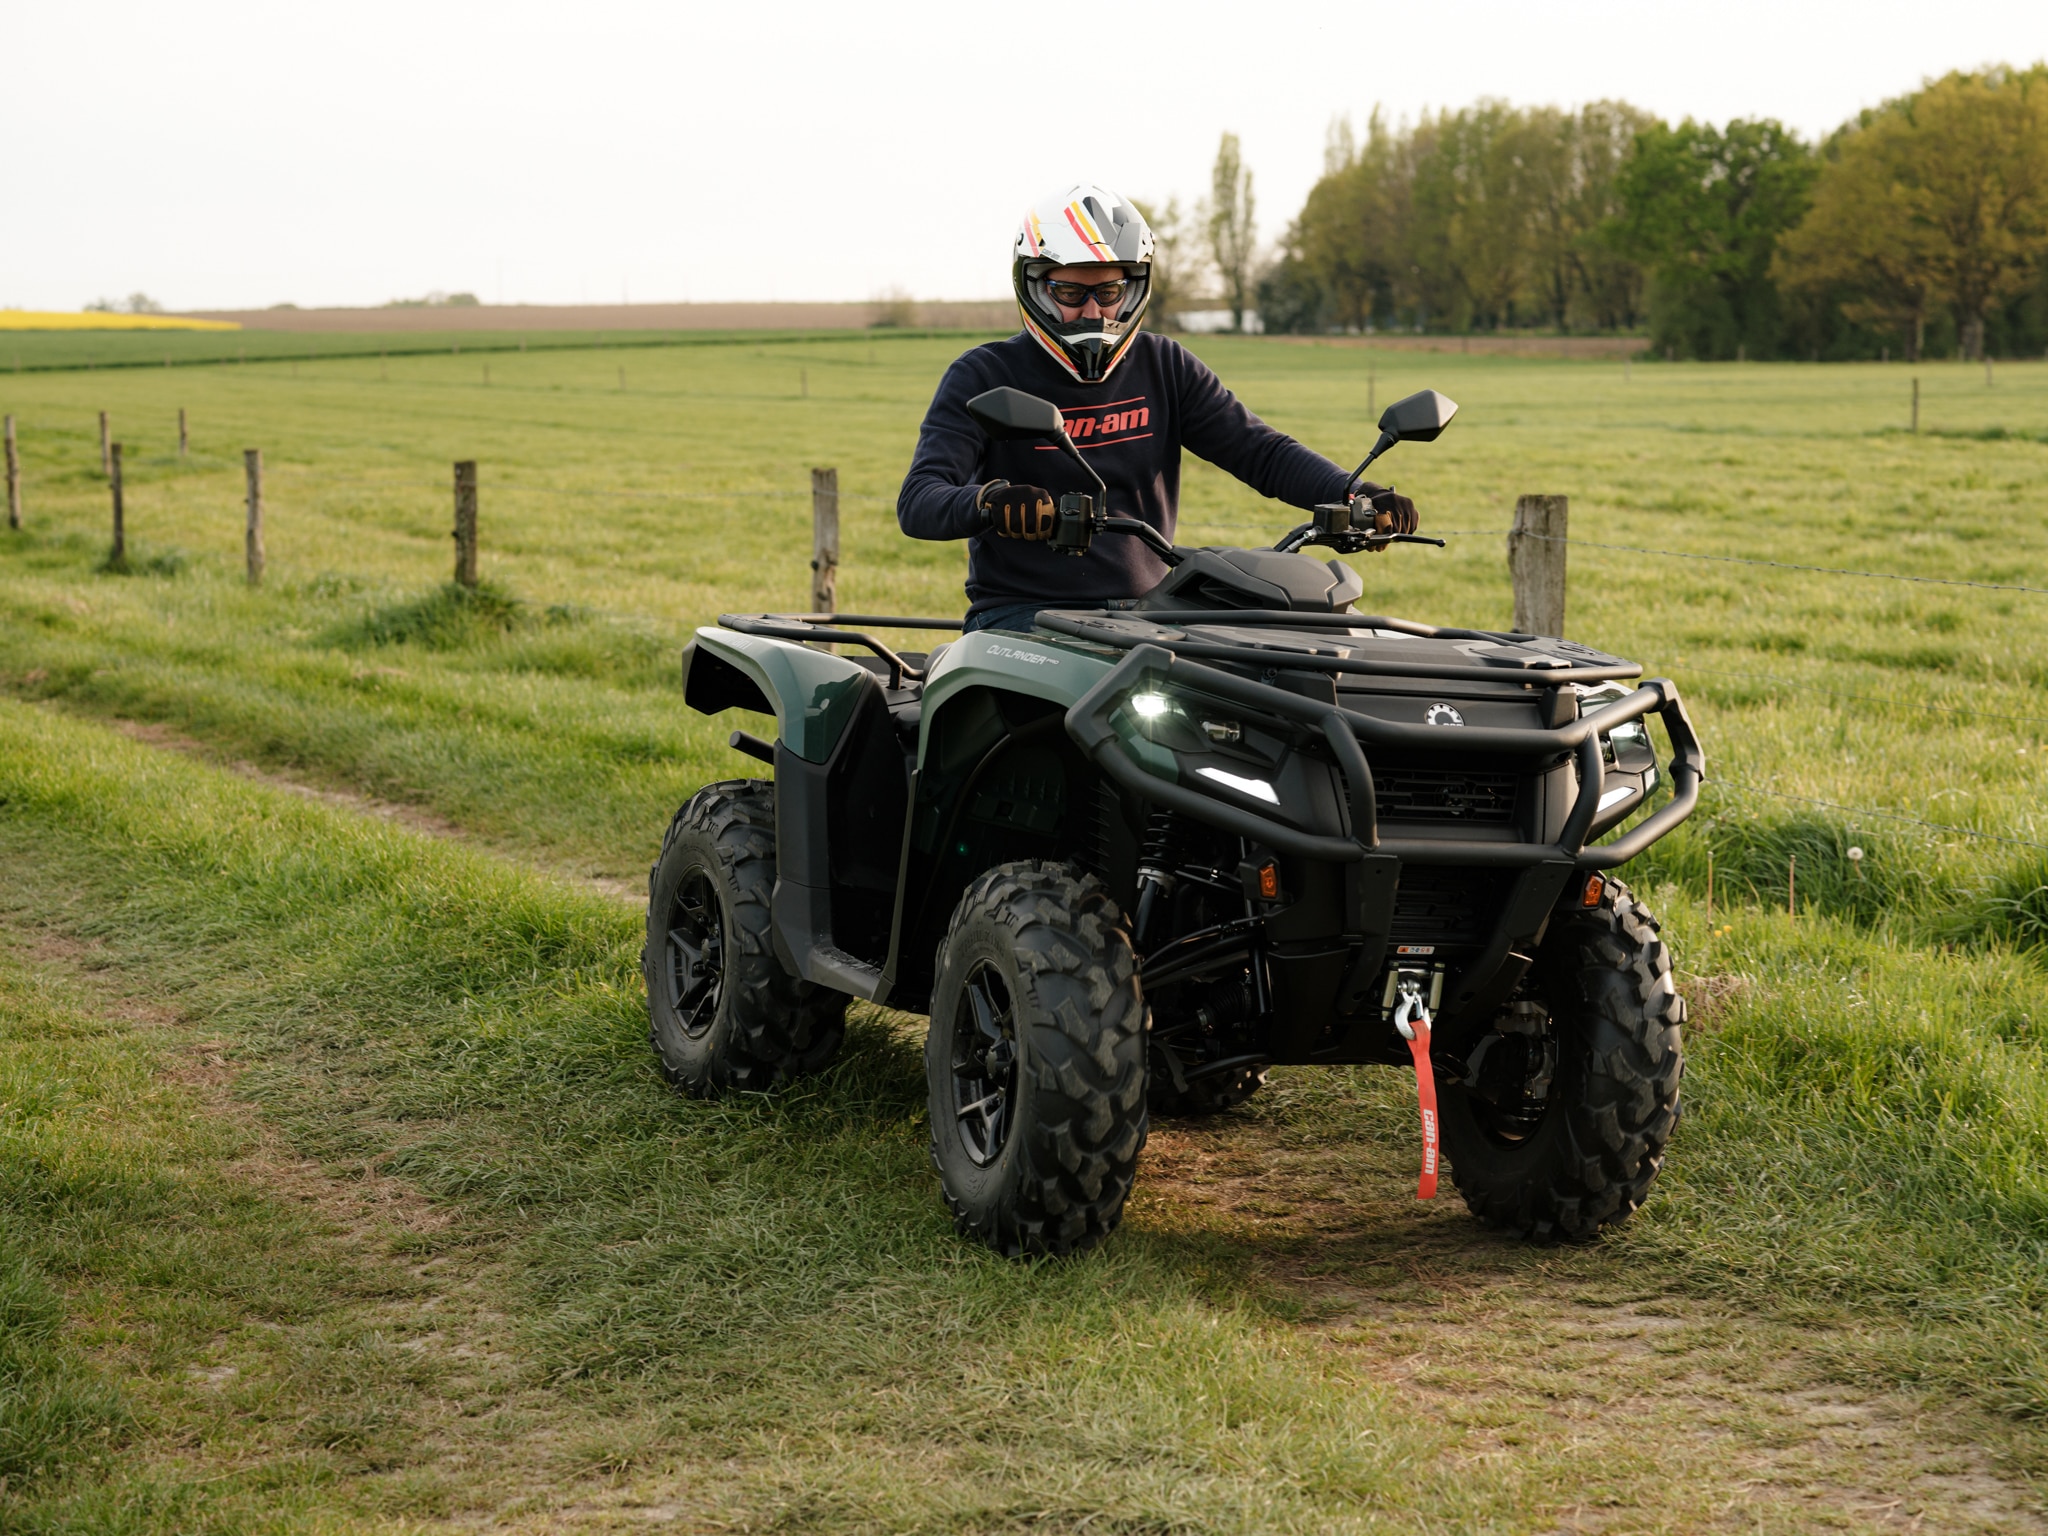 Conduciendo un ATV Can Am en una pista de campo